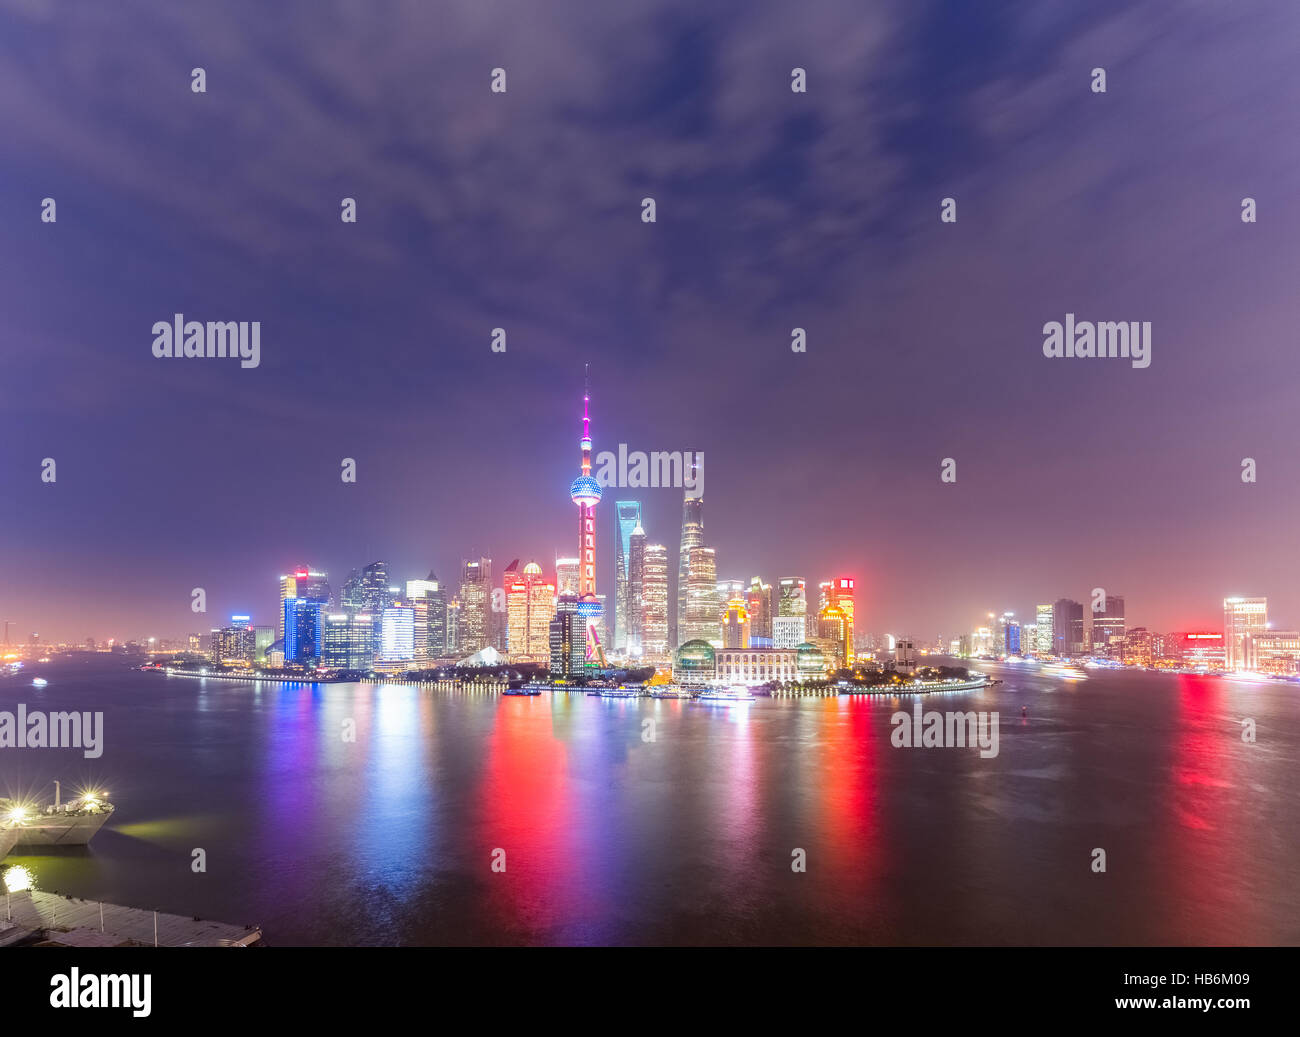 panoramic view of shanghai skyline at night Stock Photo